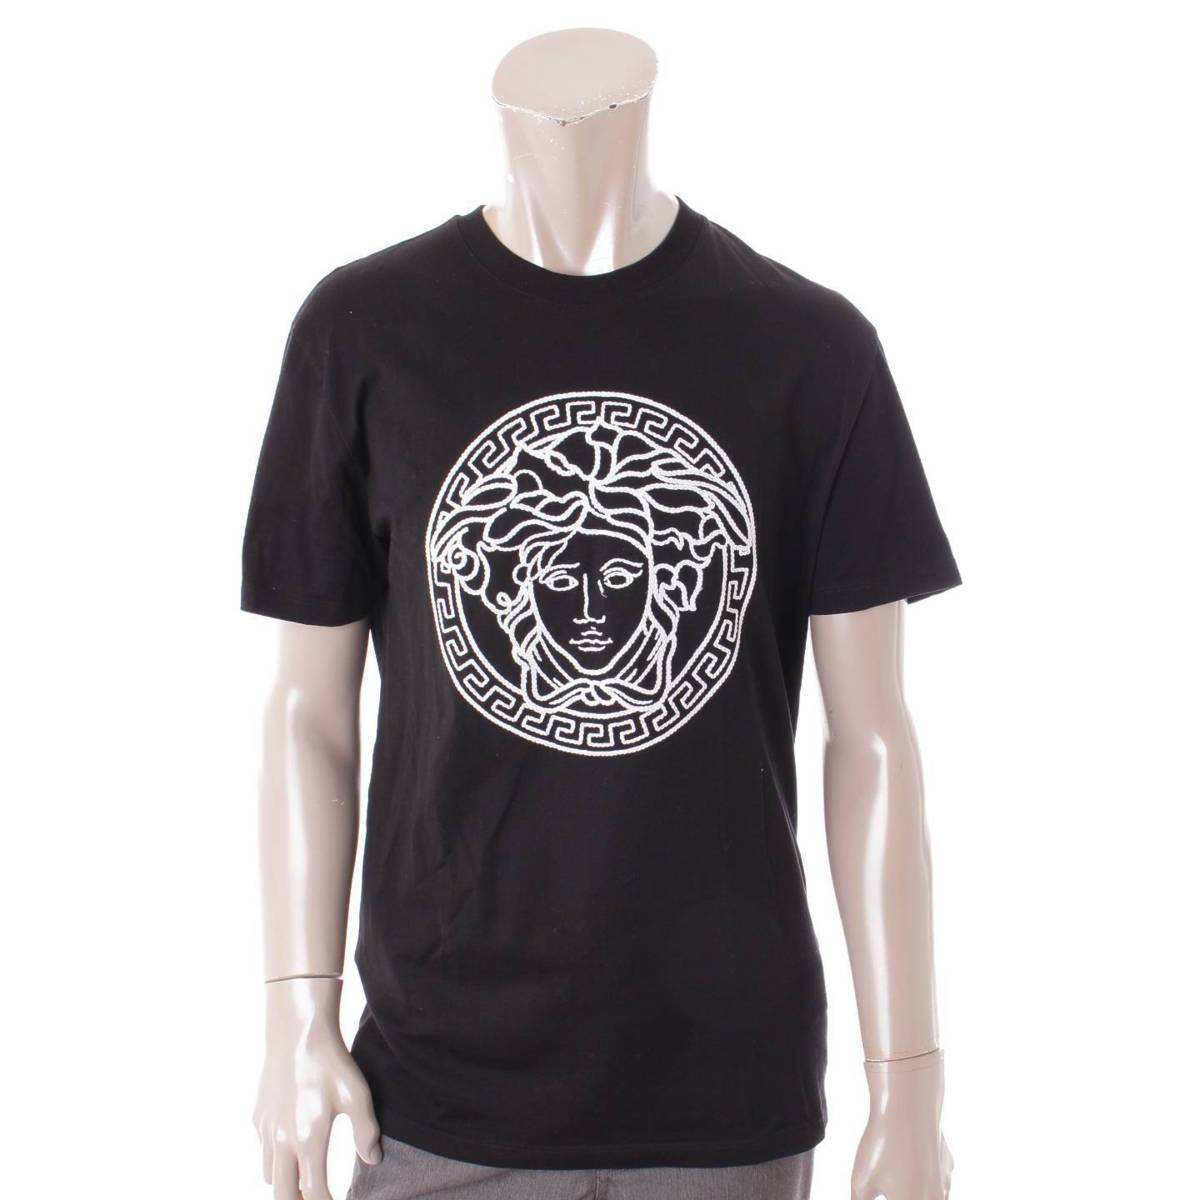 ヴェルサーチ(Versace) メンズ 21SS メデューサ 刺繍 コットン Tシャツ 半袖 A89287 ブラック S